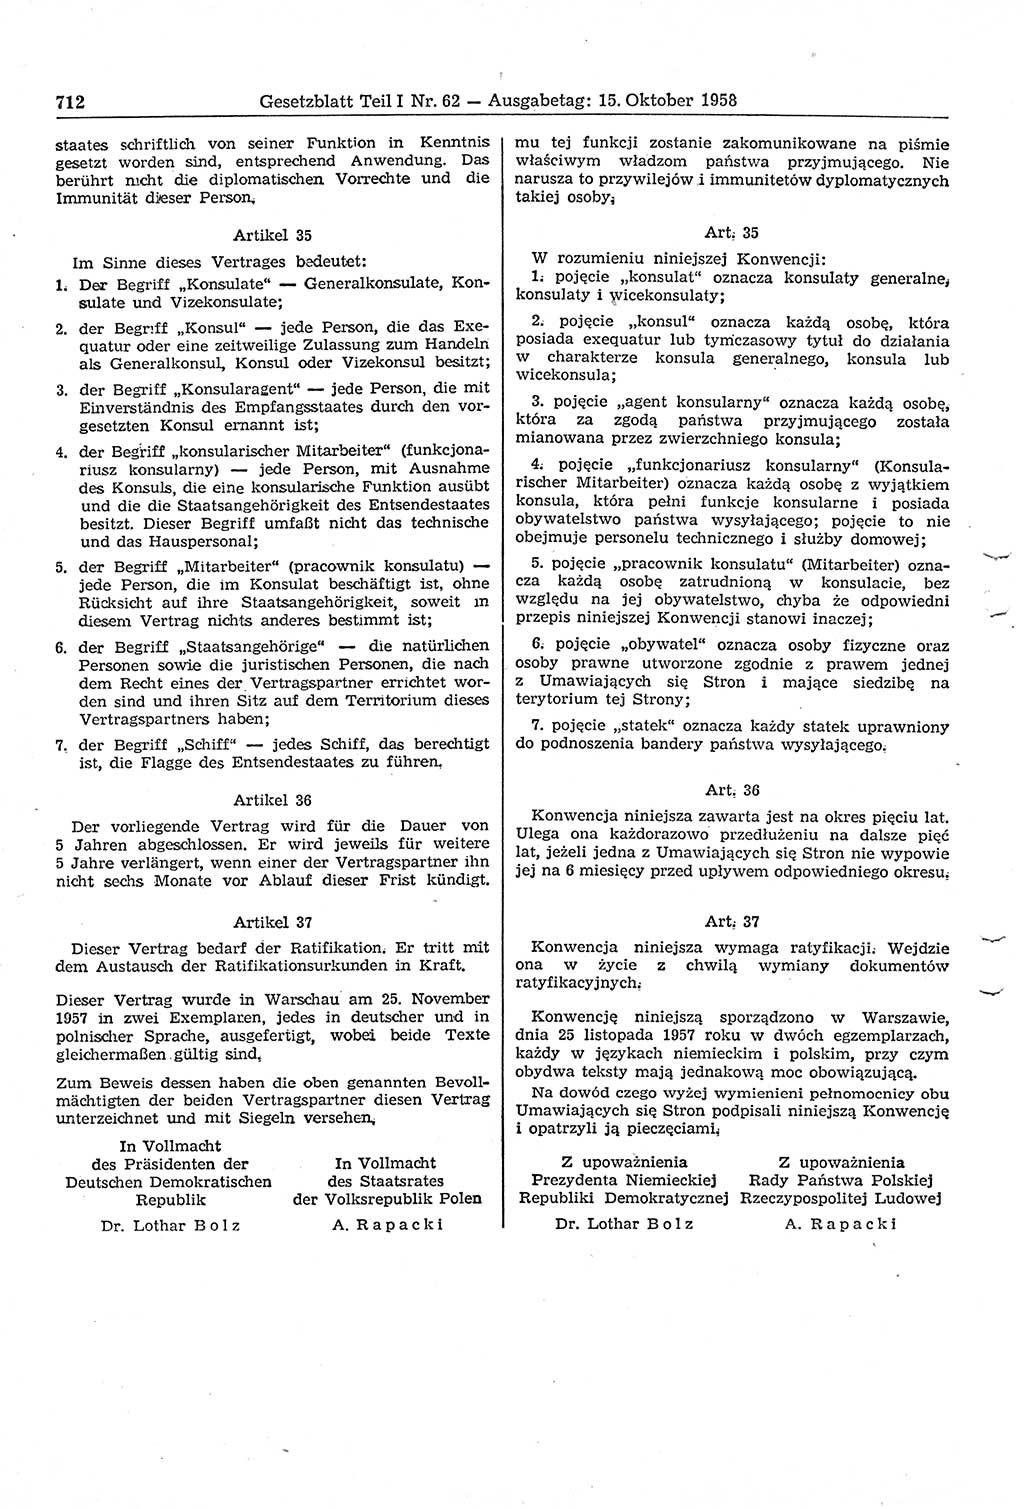 Gesetzblatt (GBl.) der Deutschen Demokratischen Republik (DDR) Teil Ⅰ 1958, Seite 712 (GBl. DDR Ⅰ 1958, S. 712)